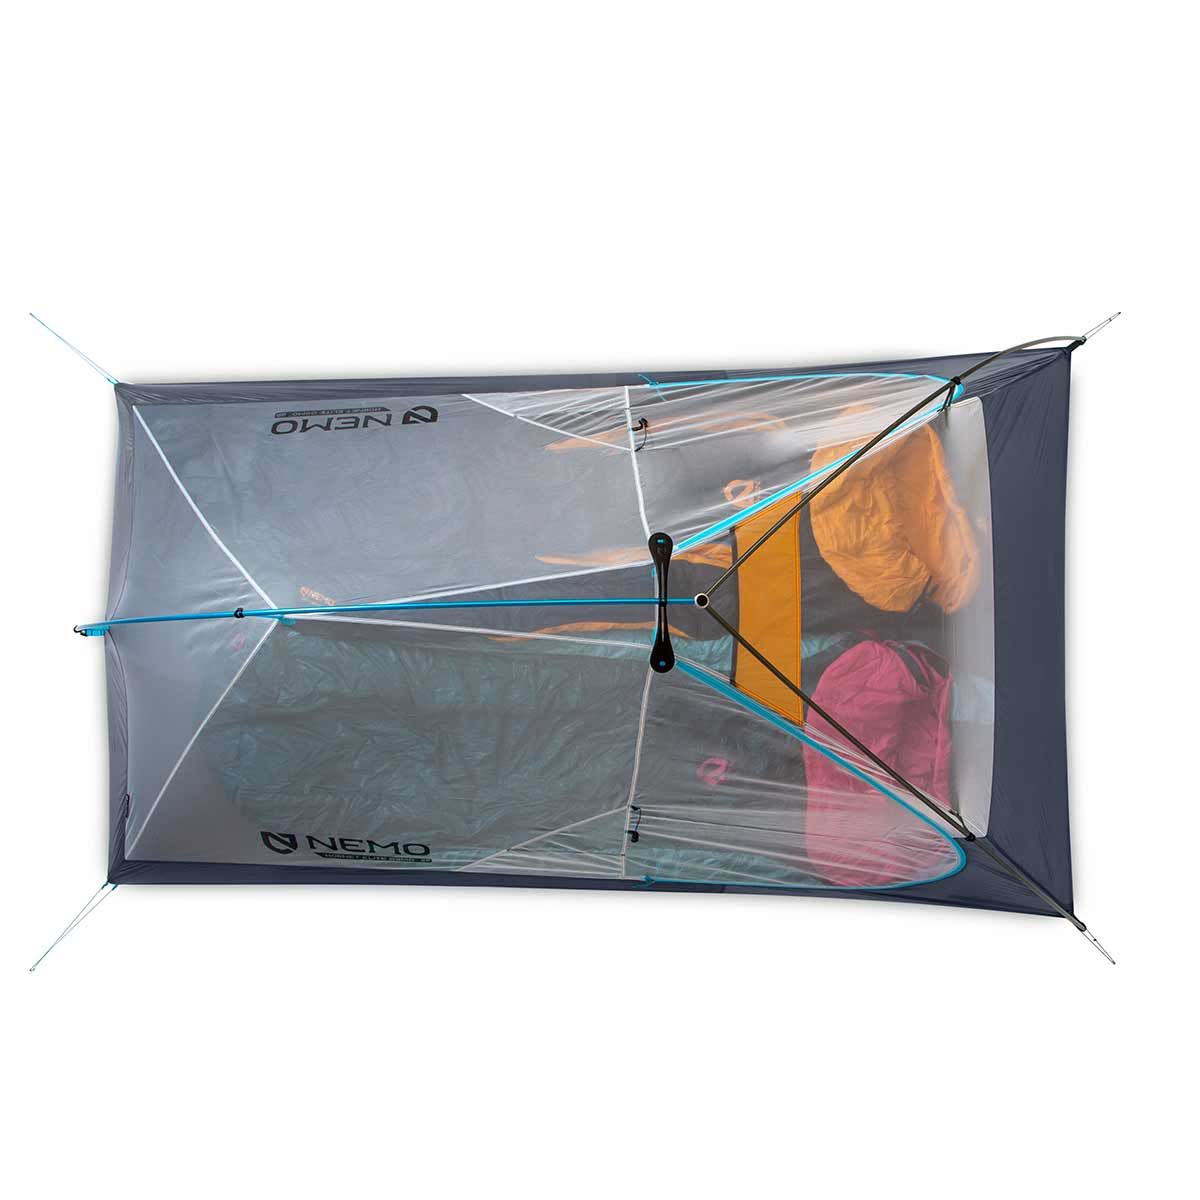 Hornet Elite OSMO Ultralight Backpacking Tent